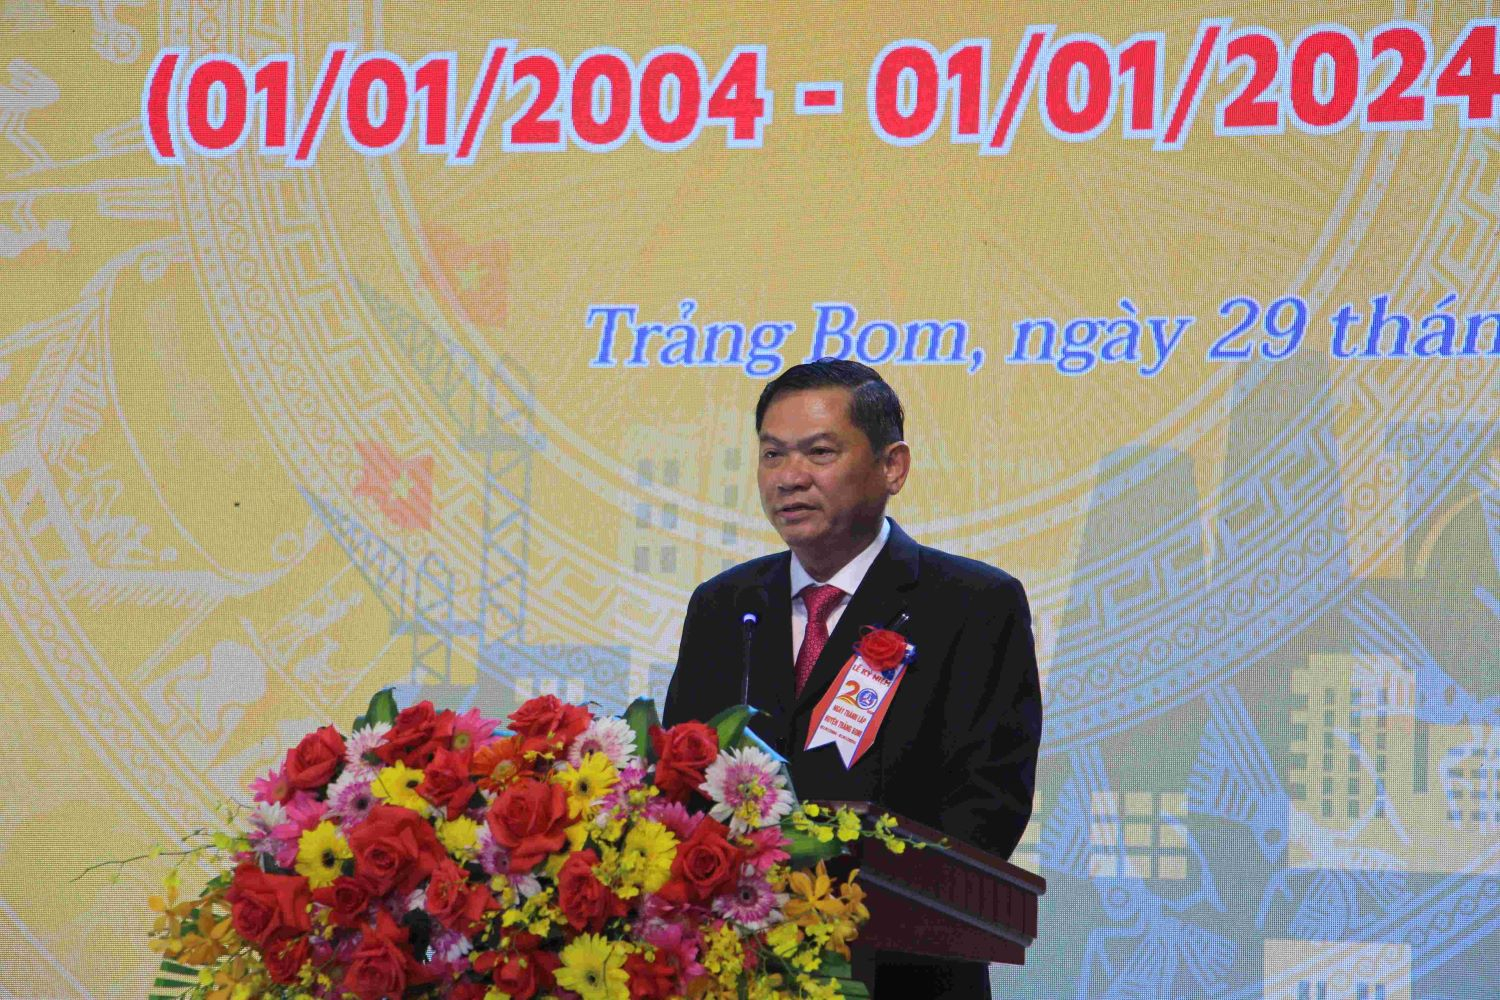 Ông Lê Tuấn Anh – Tỉnh uỷ viên, Bí thư Huyện uỷ Trảng Bom phát biểu tại buổi lễ.